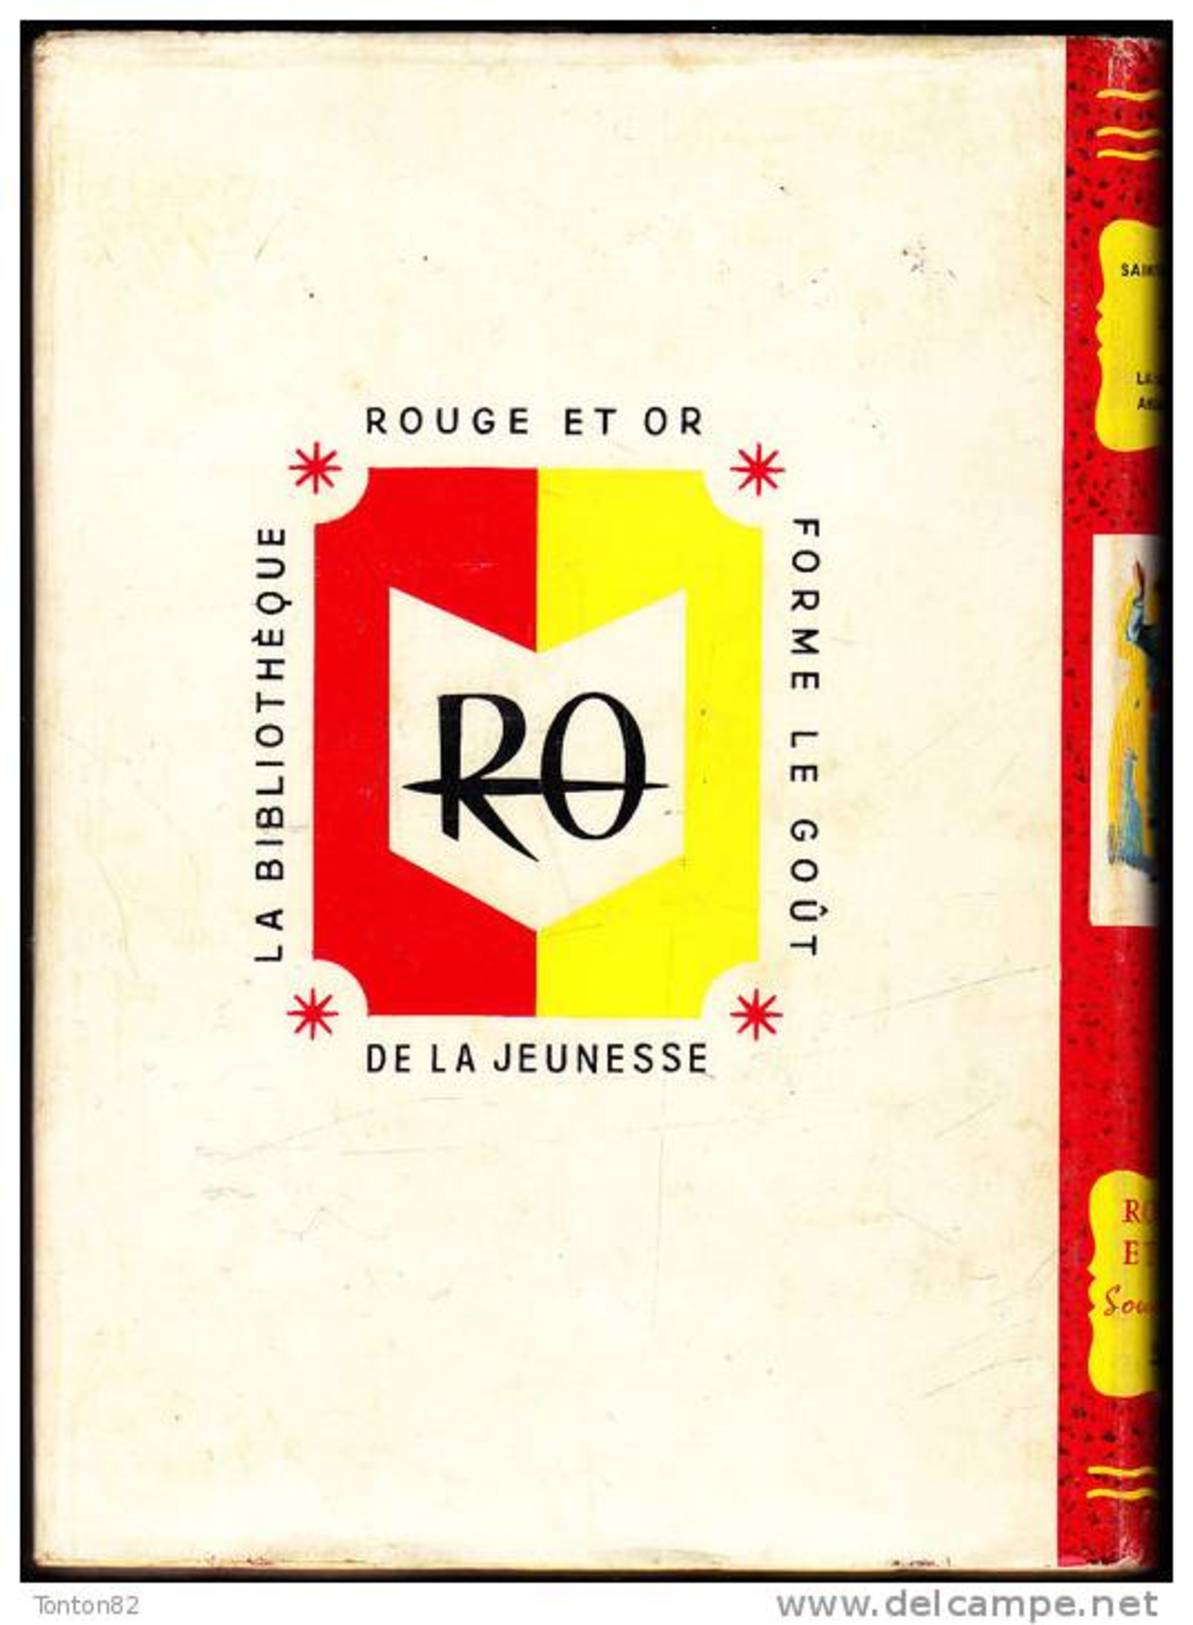 Saint-Marcoux - La Guitare Andalouse - Bibliothèque Rouge Et Or  586 - (1959) - Bibliotheque Rouge Et Or